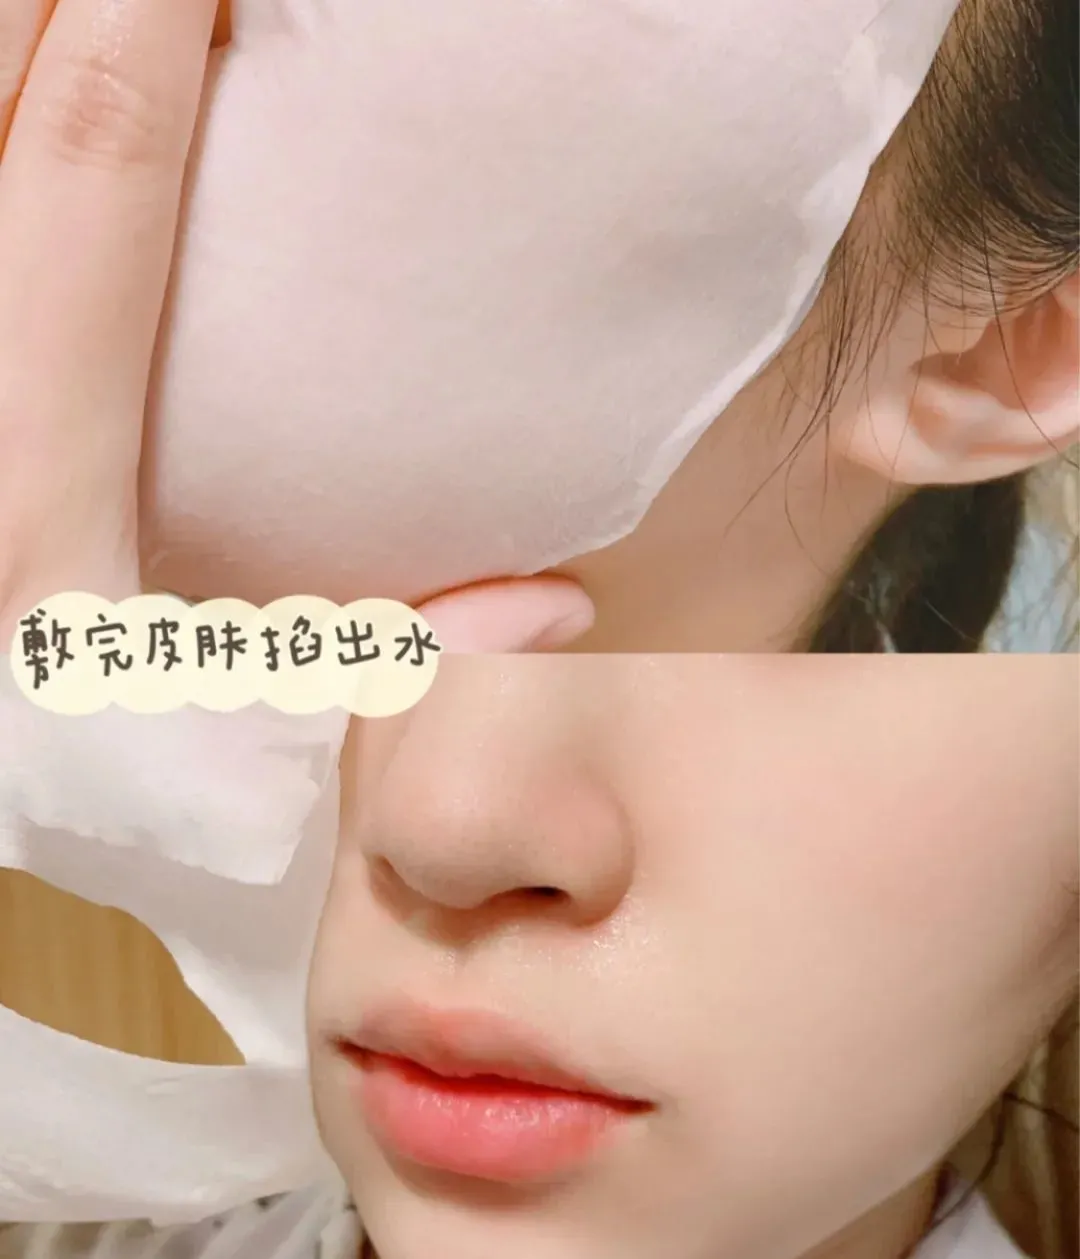 日本人用温泉水做面膜？粉刺、闭口、敏感泛红肌肤有得搞了？